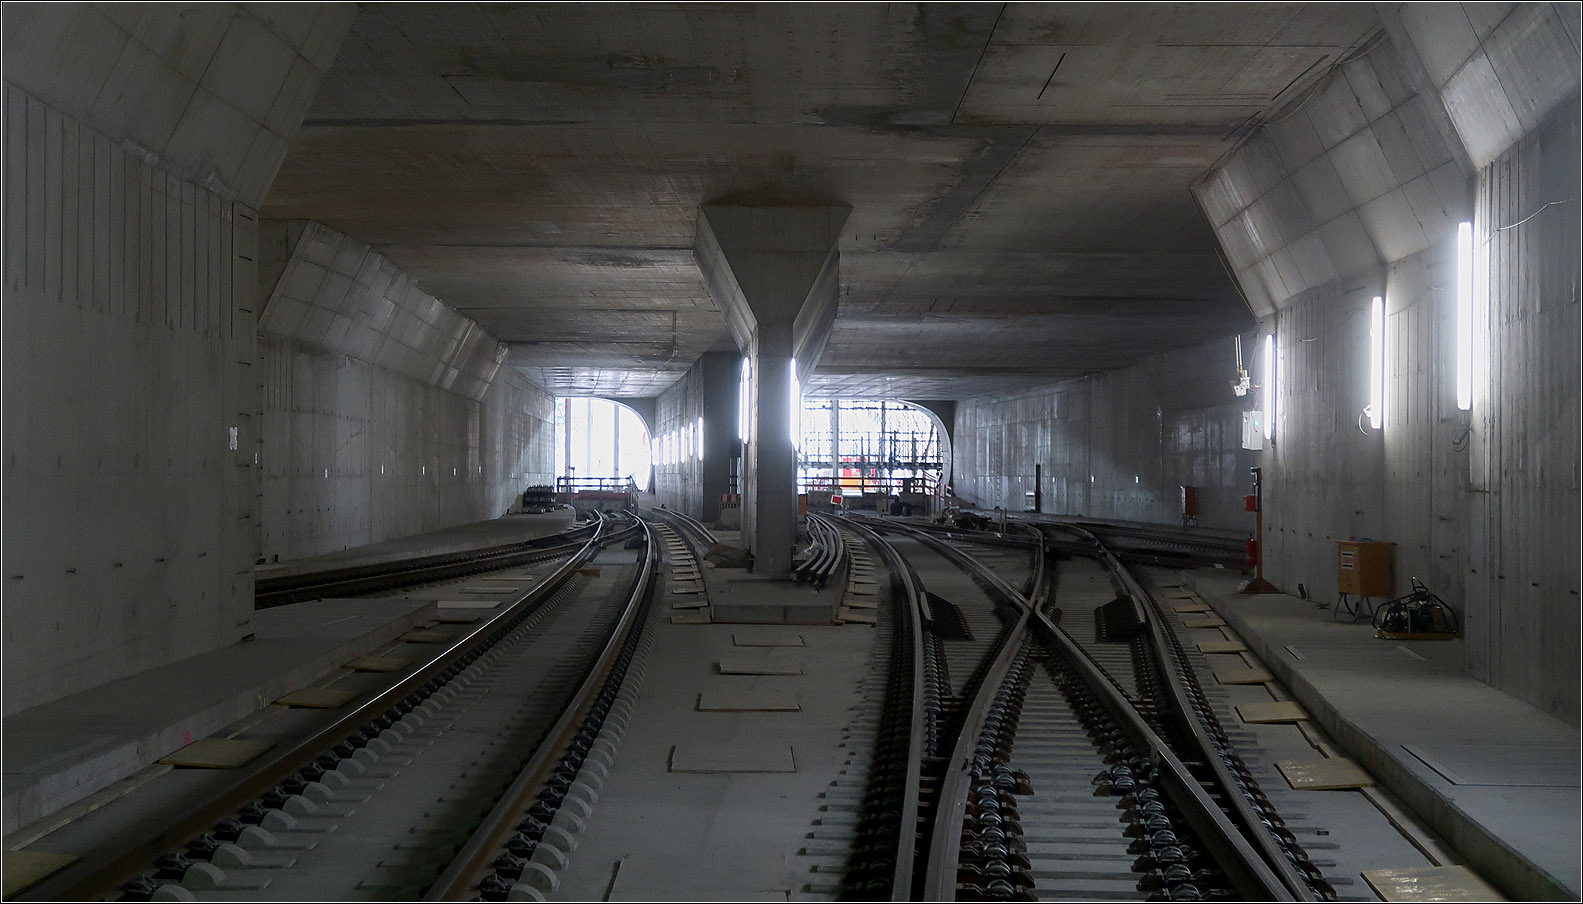 Im Gleisvorfeld des Nordkopfes - 

... des neuen Stuttgarter Hauptbahnhofes. An den Tagen der Offenen Baustelle konnte man über die zukünftige Rettungszufahrt Nord auch in den Tunnelbereich des nördlichen Vorfeldes mit Blickrichtung Bahnsteighalle die hier noch im Tageslicht liegt, da sie noch nicht vollständig abgedeckt ist. Die Gleise in den Tunnel Bad Cannstatt und Feuerbach sind schon verlegt. Die beiden Gleise führen in den Tunnel Feuerbach. Links der Abzweig geht in den Tunnel Bad Cannstatt. Der Abzweig rechts führt zu den Gegengleisen.

10.04.2023 (M)
